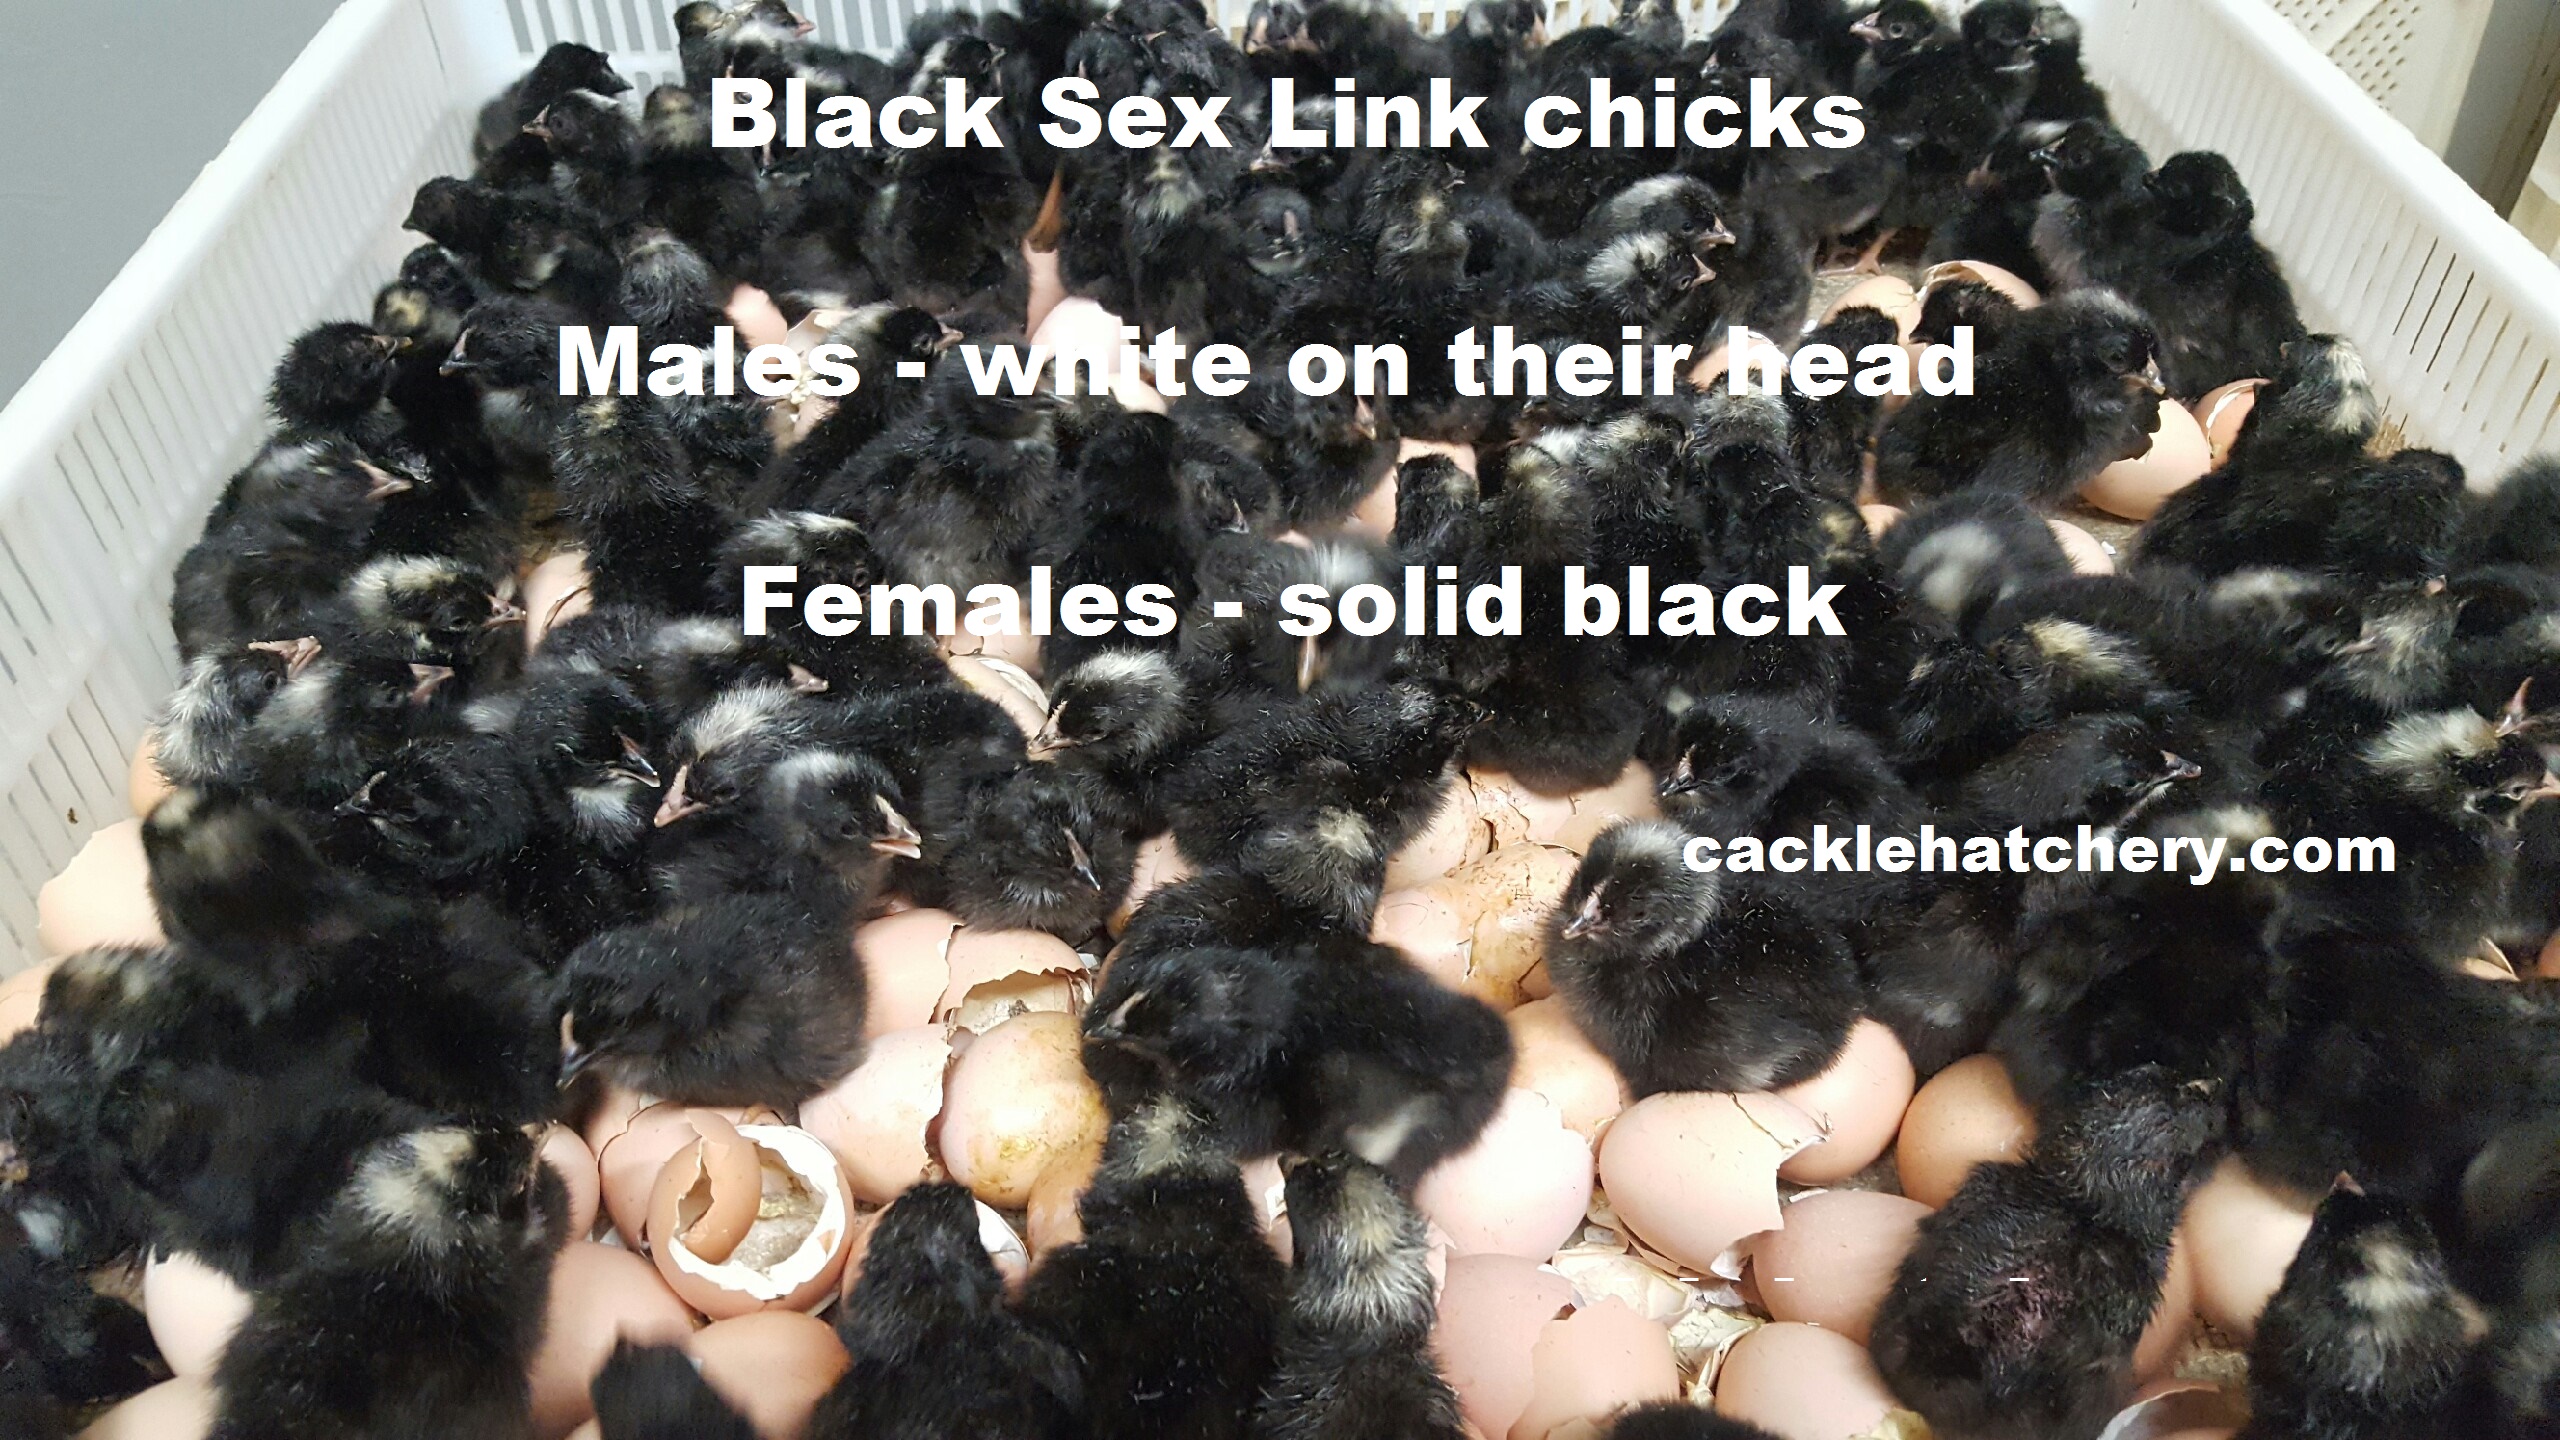 Black Sex Link Pullets 40